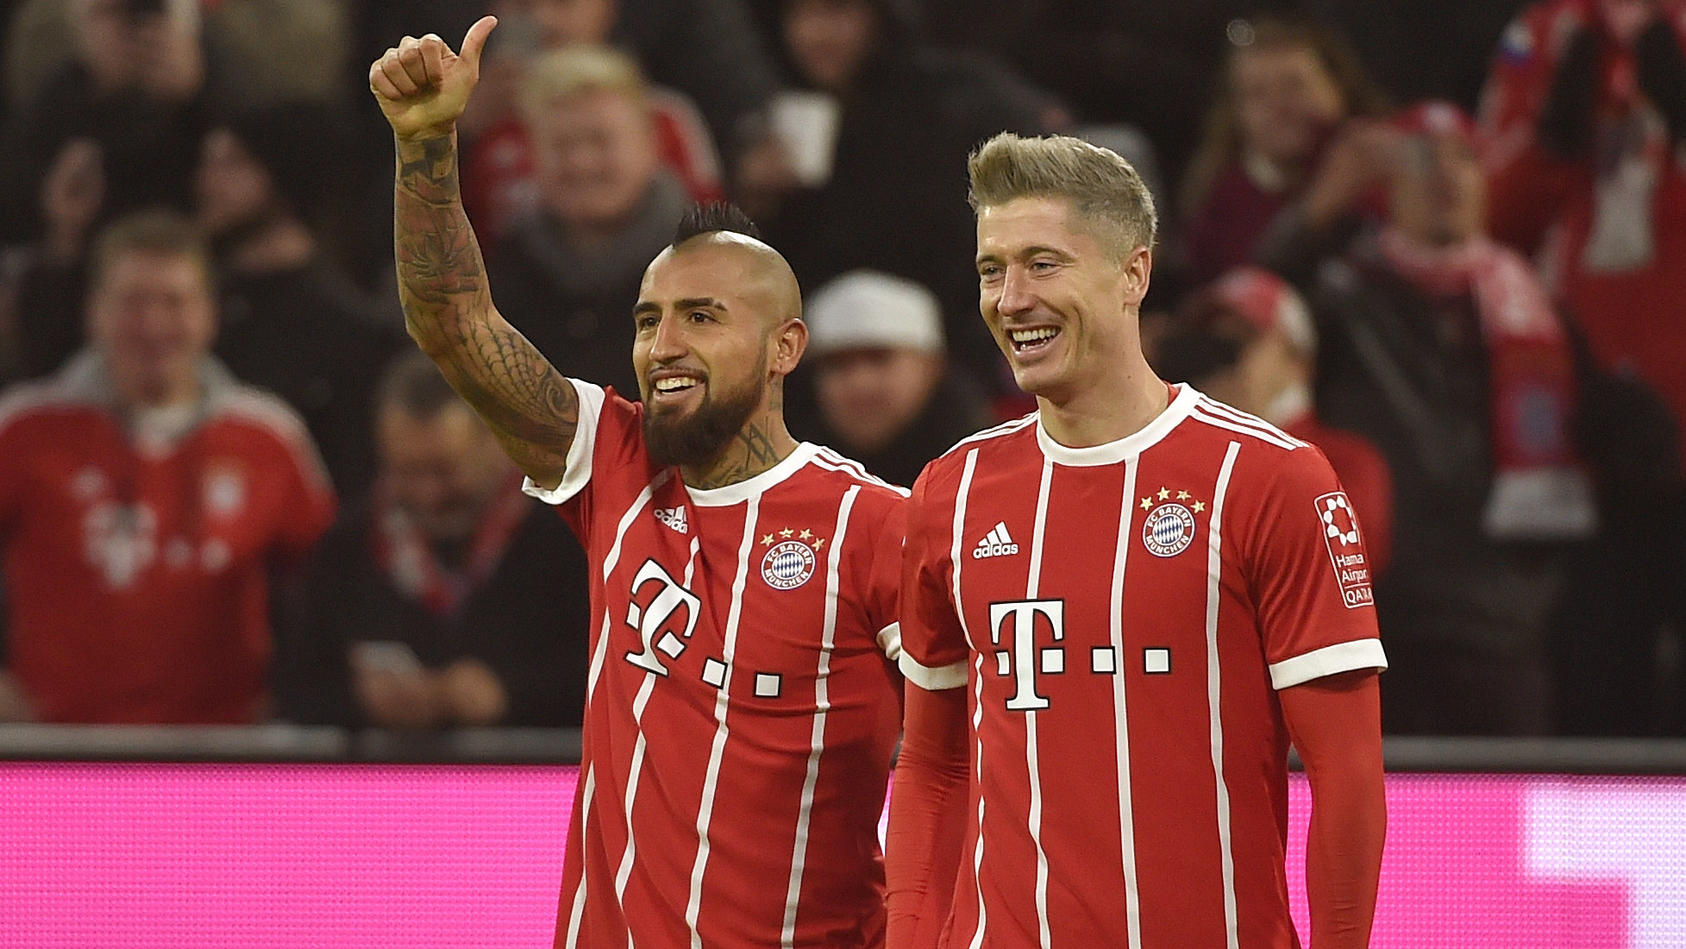 Bayern siegt dominant gegen Augsburg, Köln hadert mit Videobeweis, M'gladbach macht Sprung